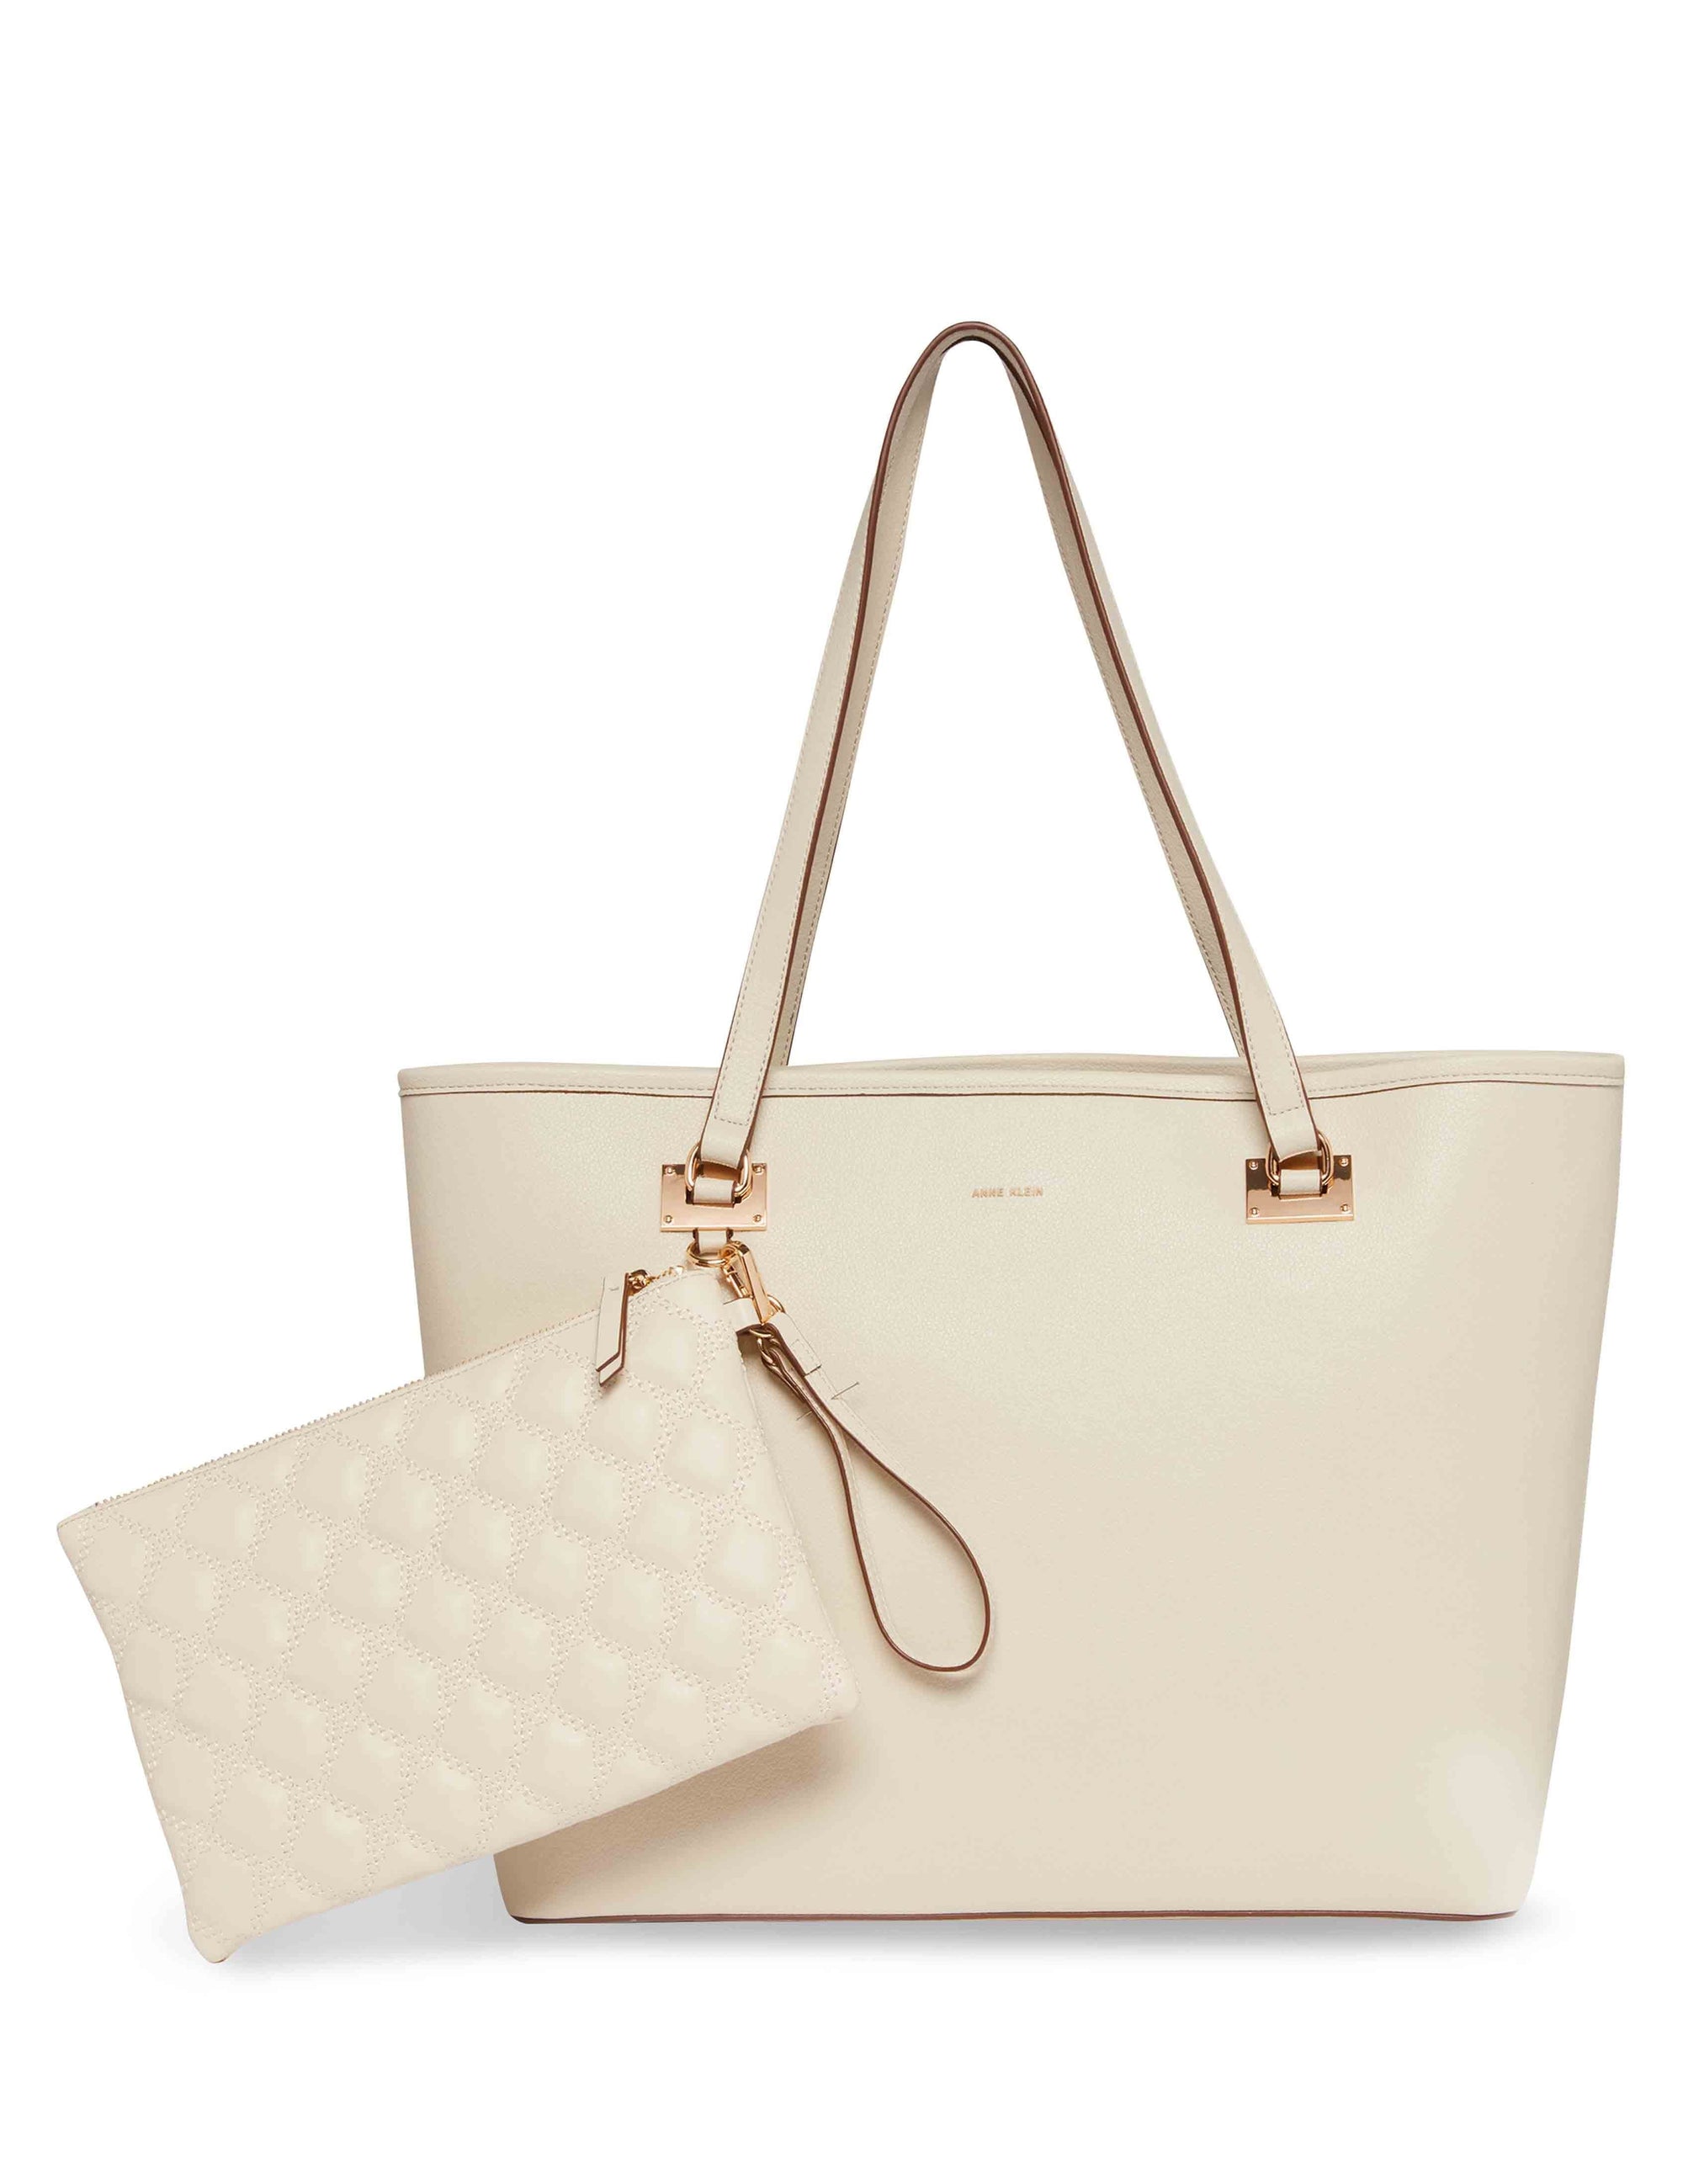 Calvin Klein Purse Tote Handbag Yellow Gold Chain Handle 11w X 10.25 Tall X  5 Deep Ladies Bag - Etsy Finland